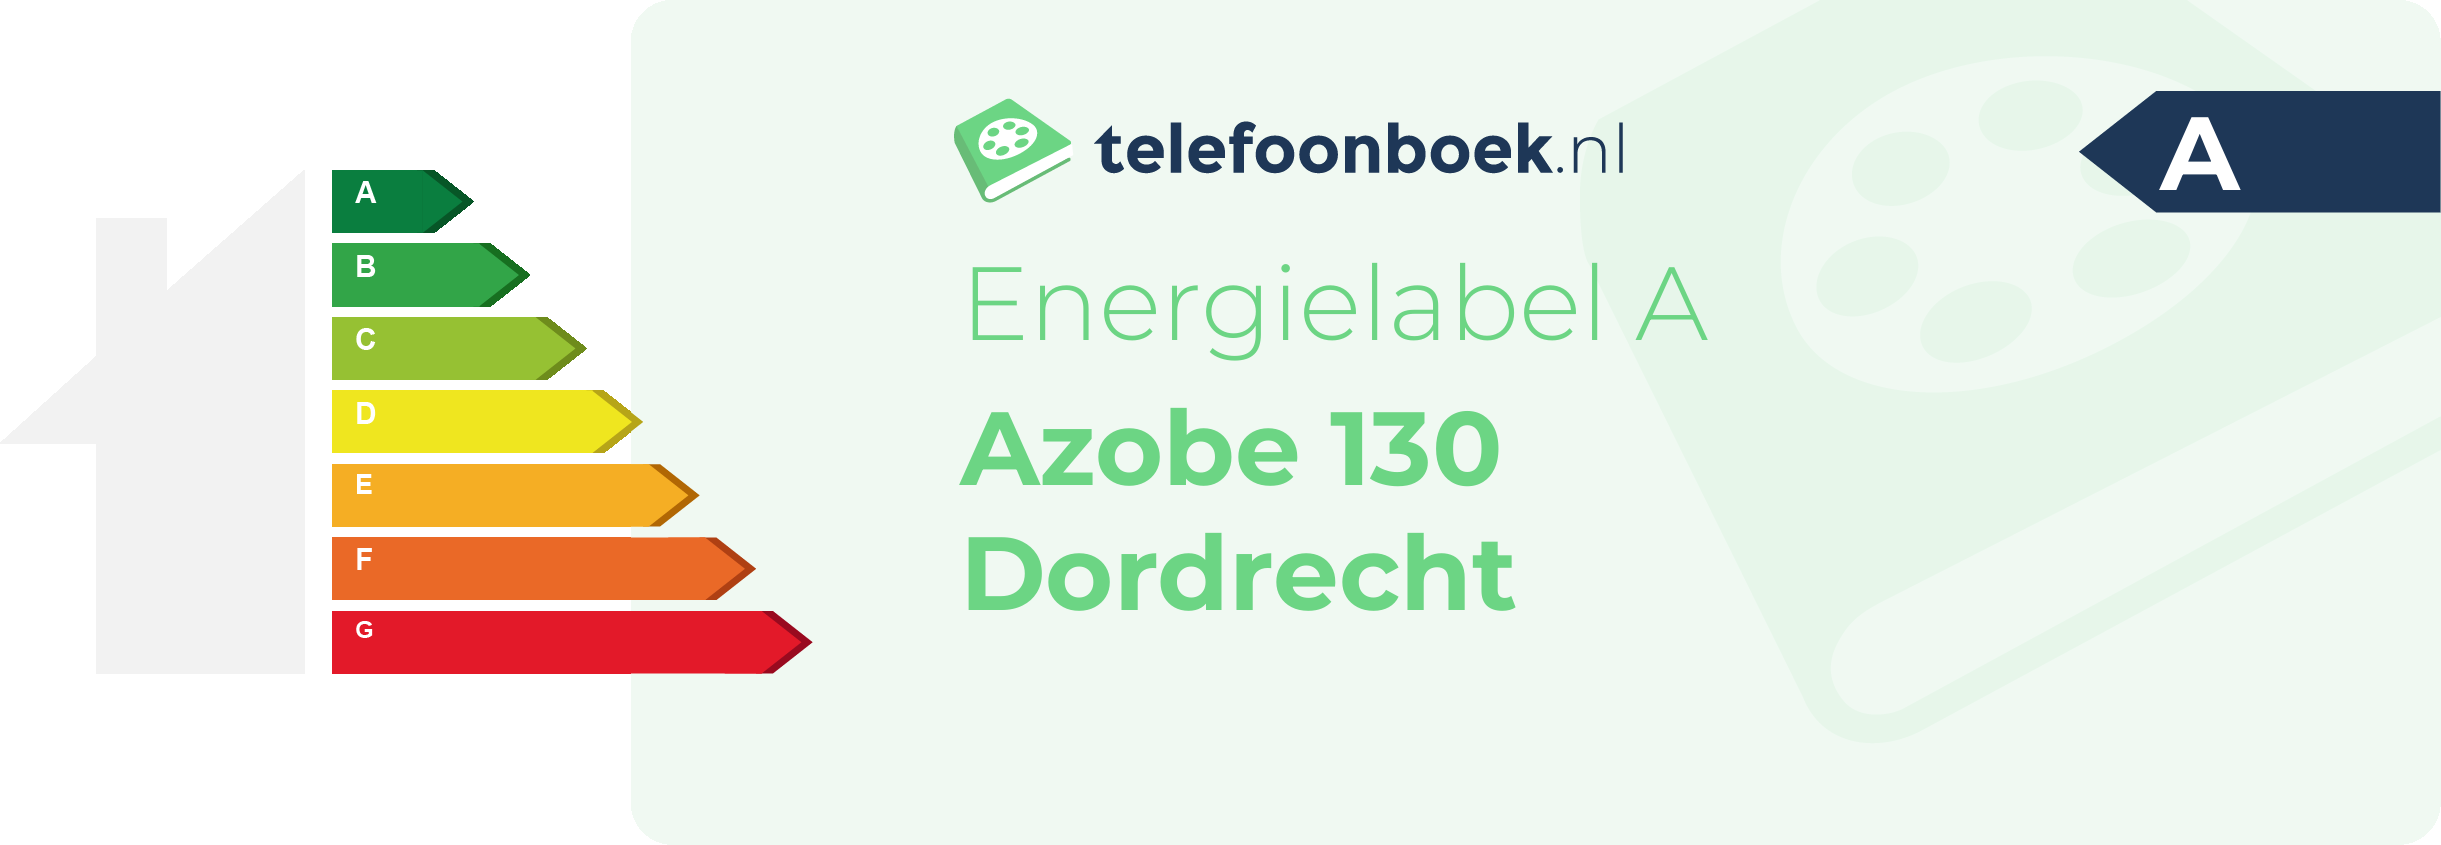 Energielabel Azobe 130 Dordrecht